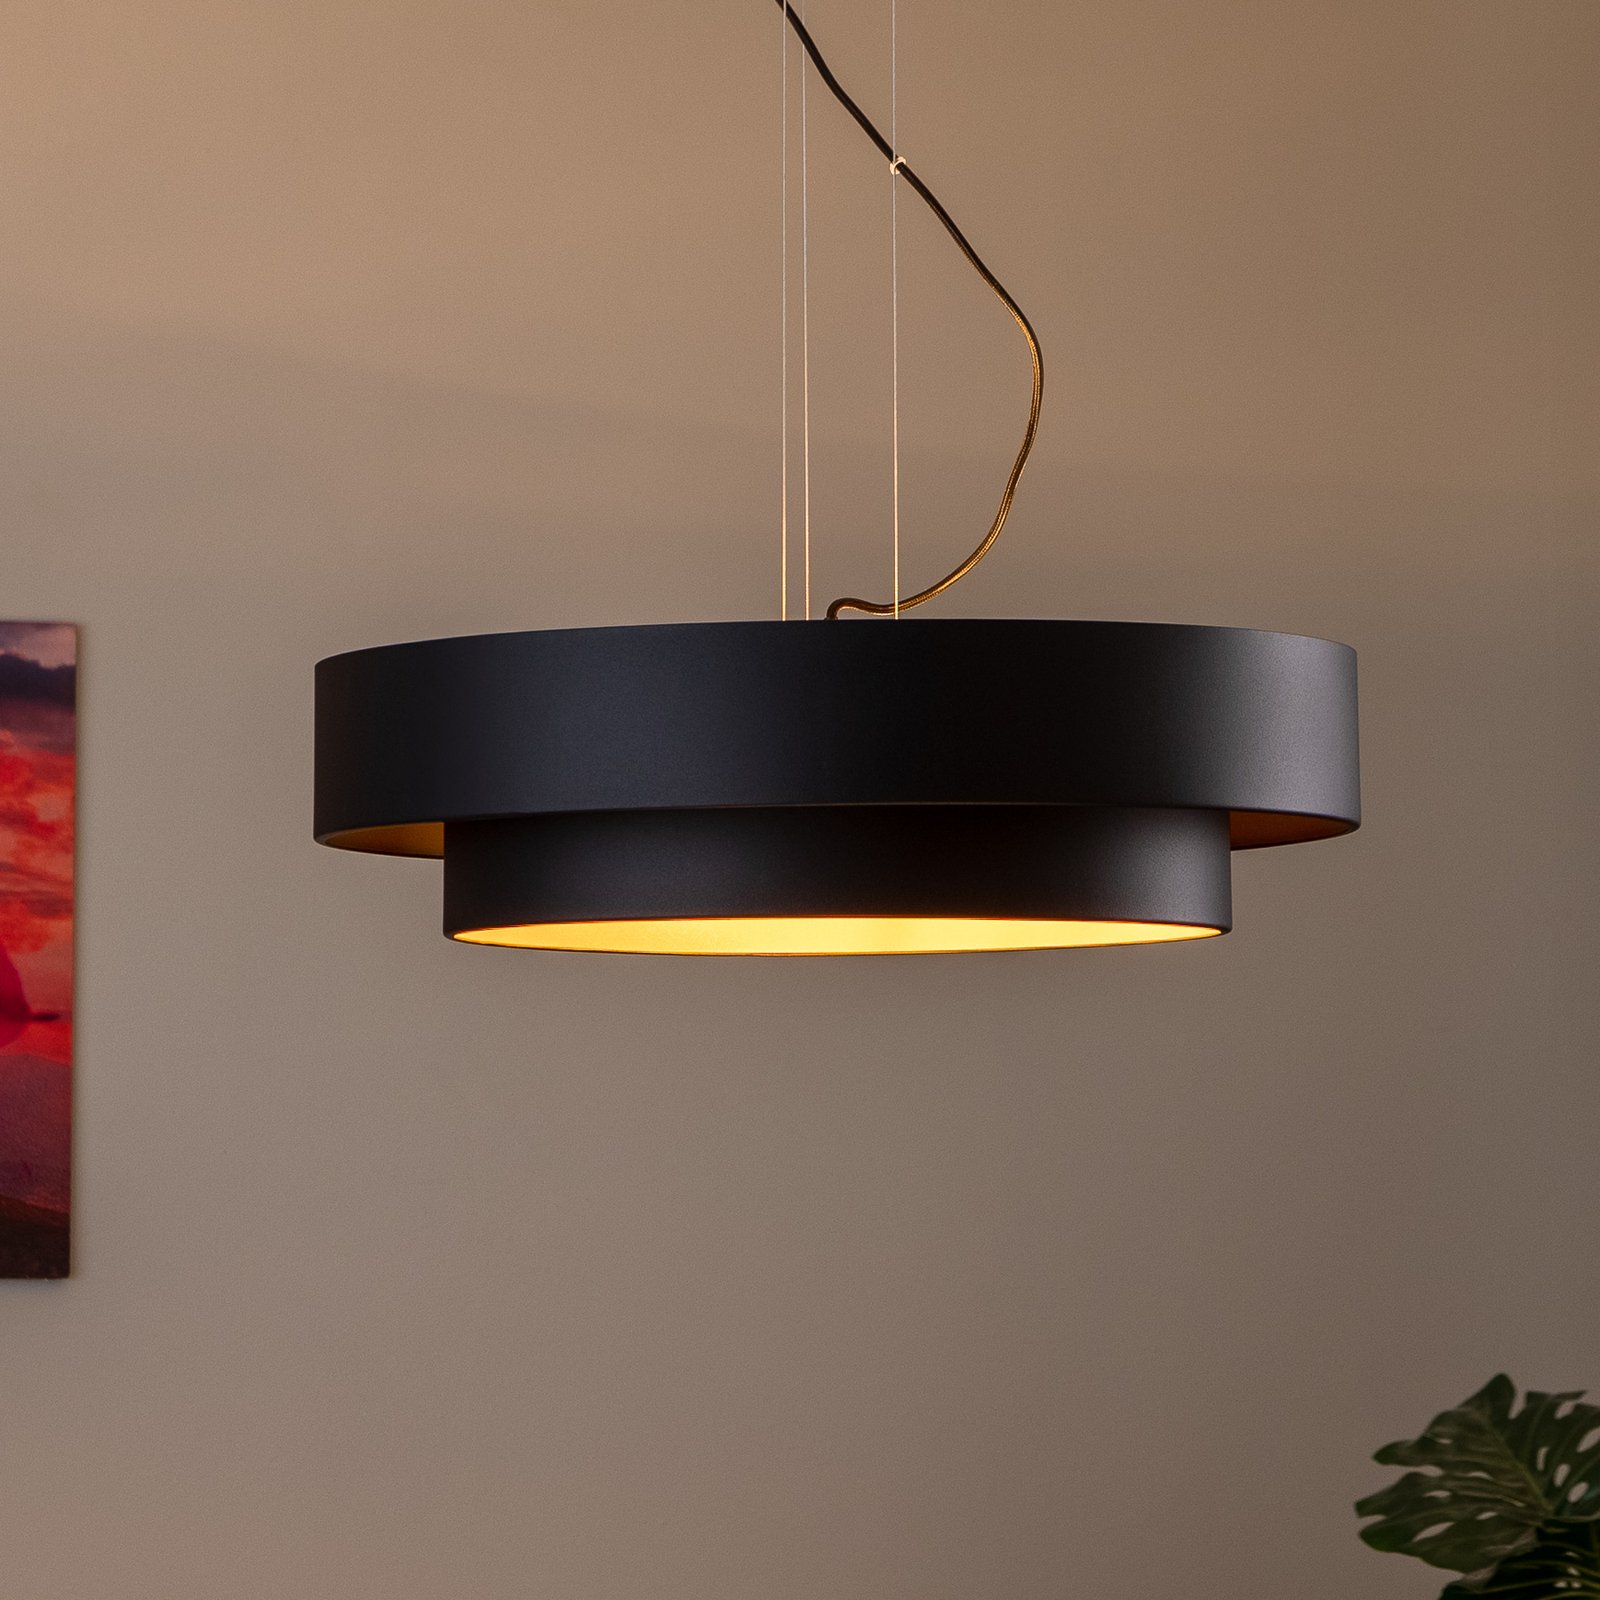 Fredik hængelampe, Ø 60 cm, sort/guld